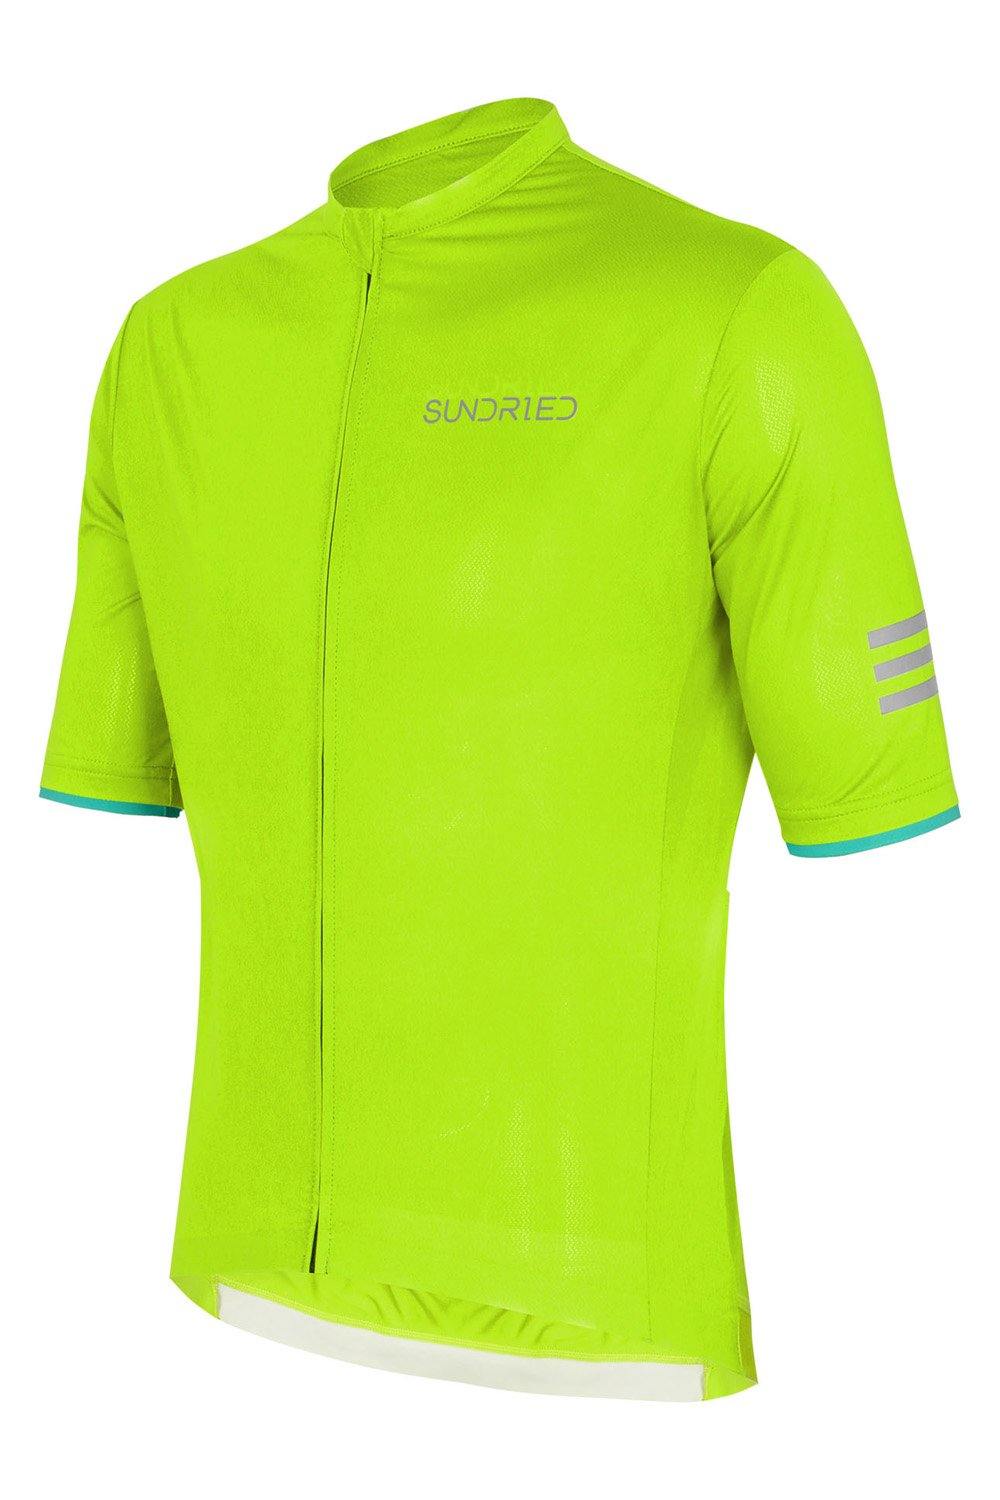 Sundried Apex Men's Short Sleeve Jersey Short Sleeve Jersey XS Green SD0339 XS Green Activewear